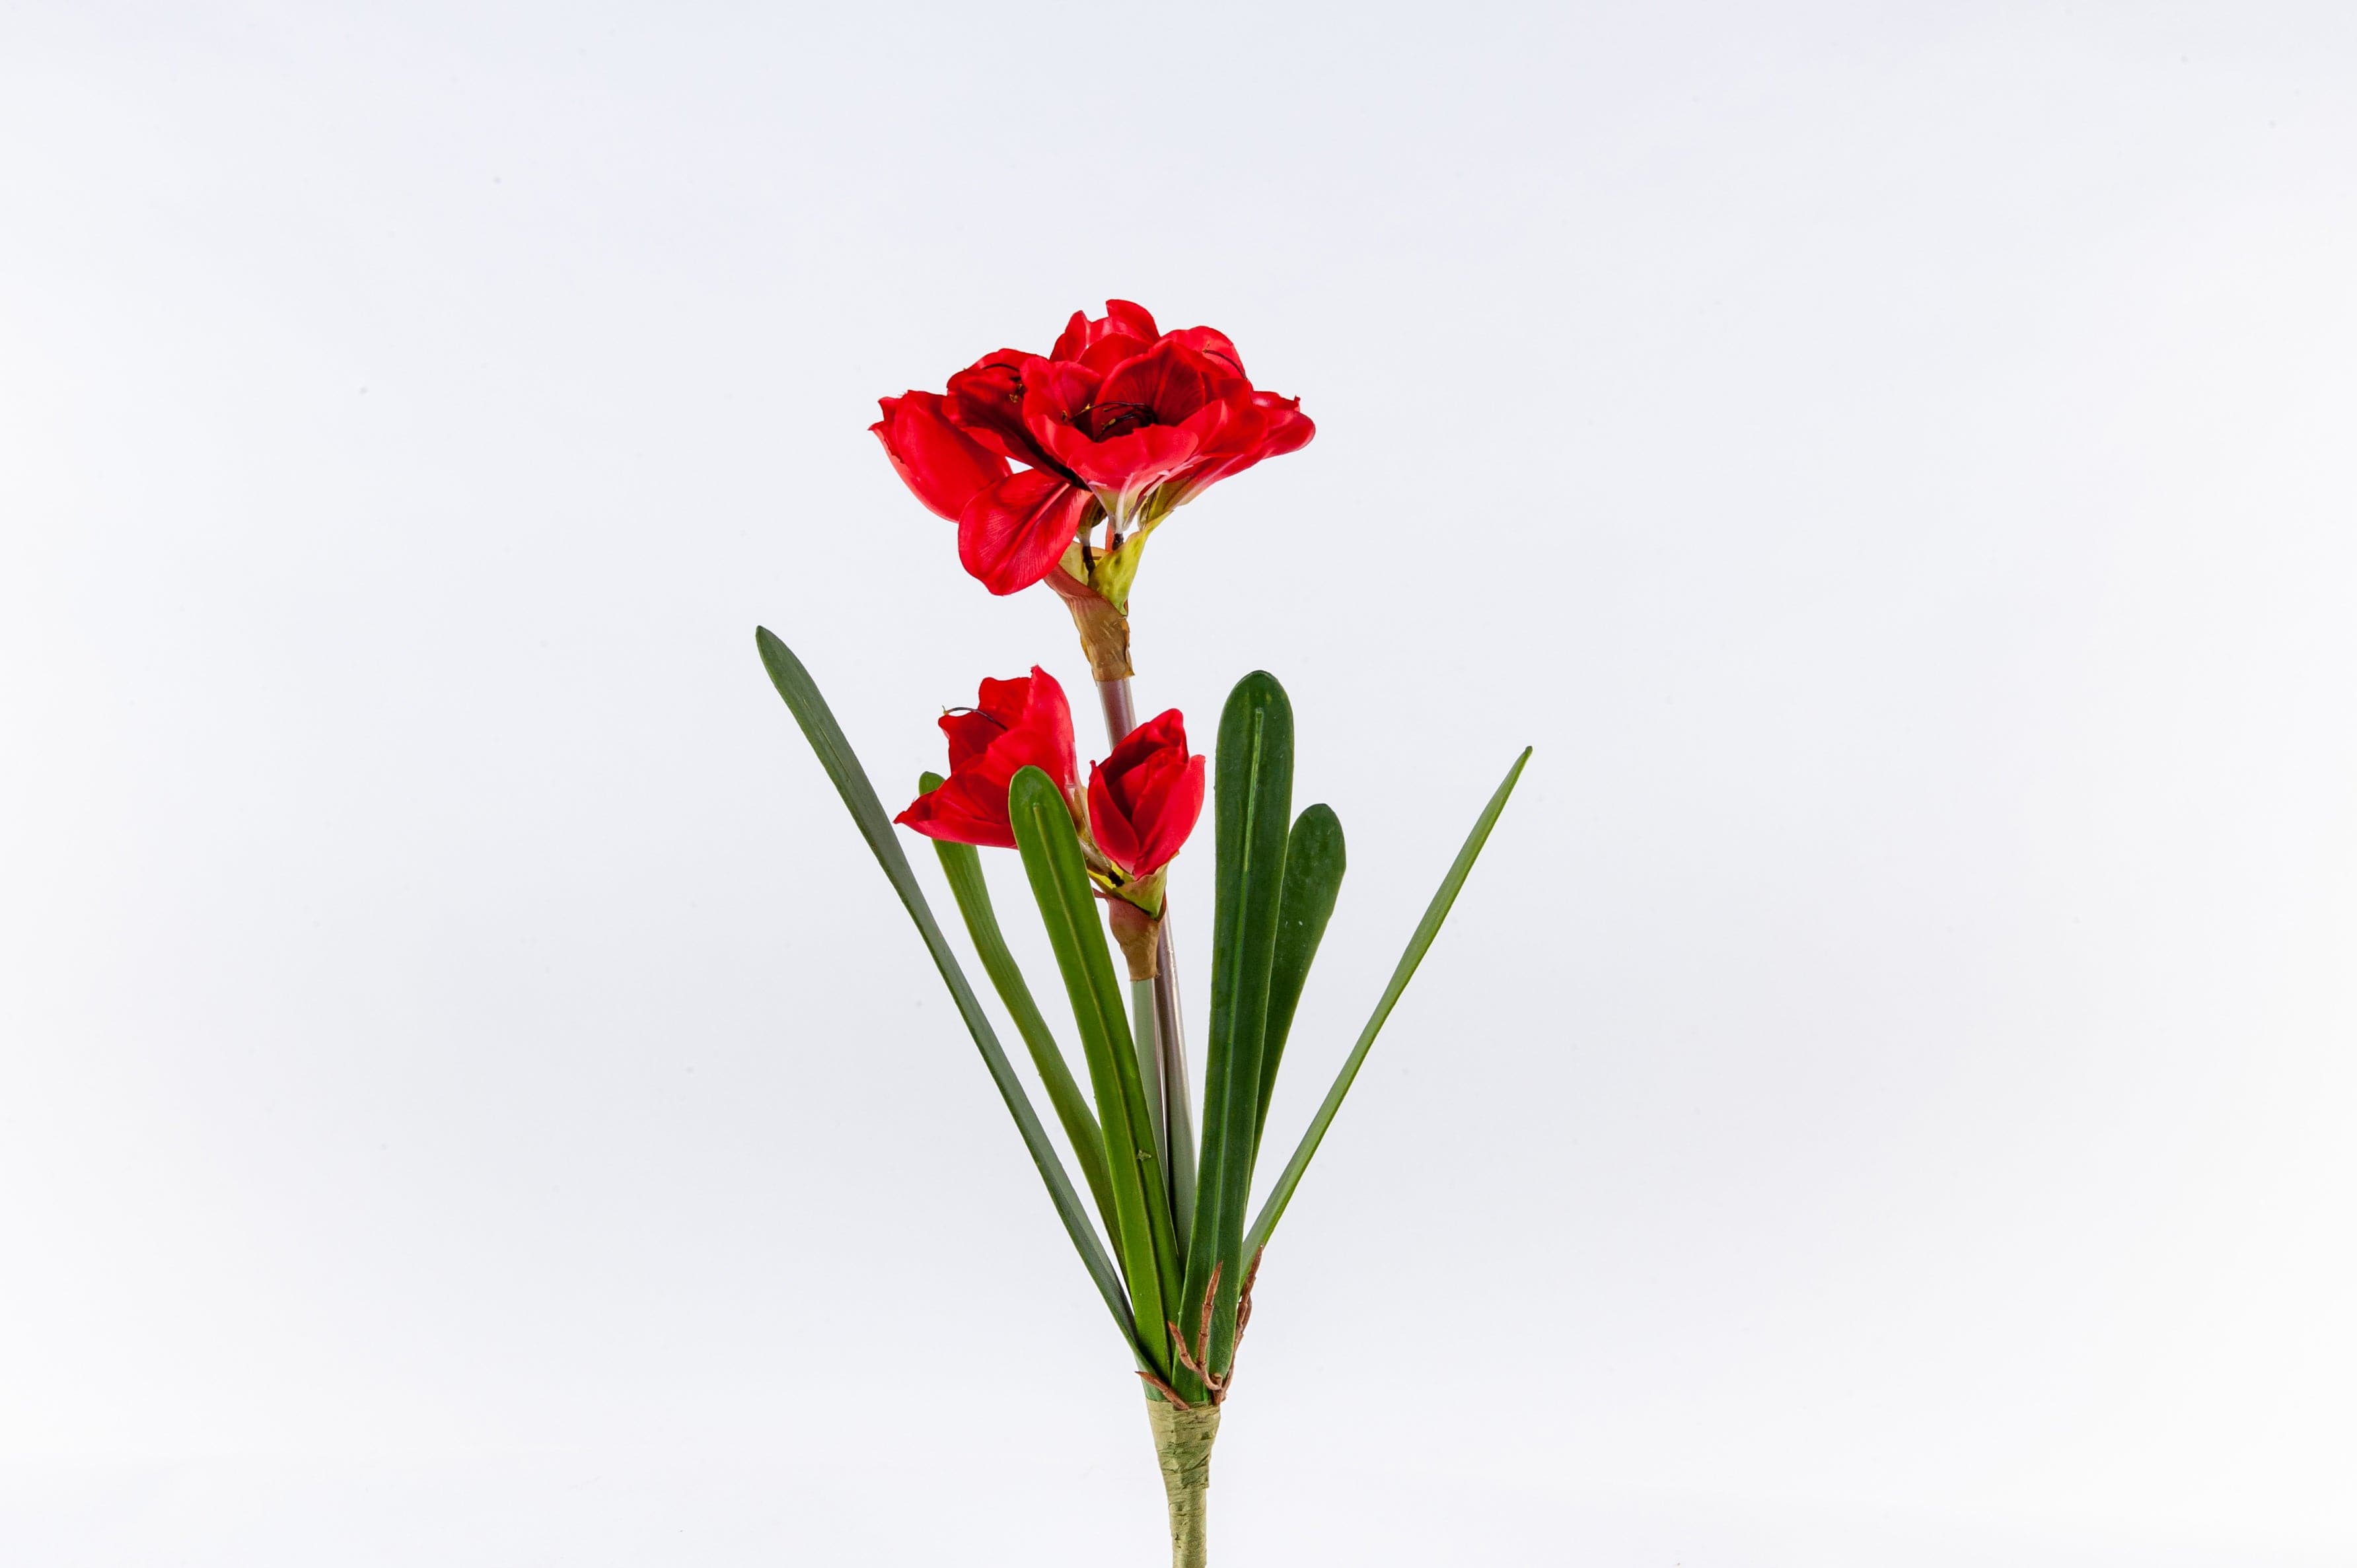 Amaryllis Flower Red - Fervor + Hue